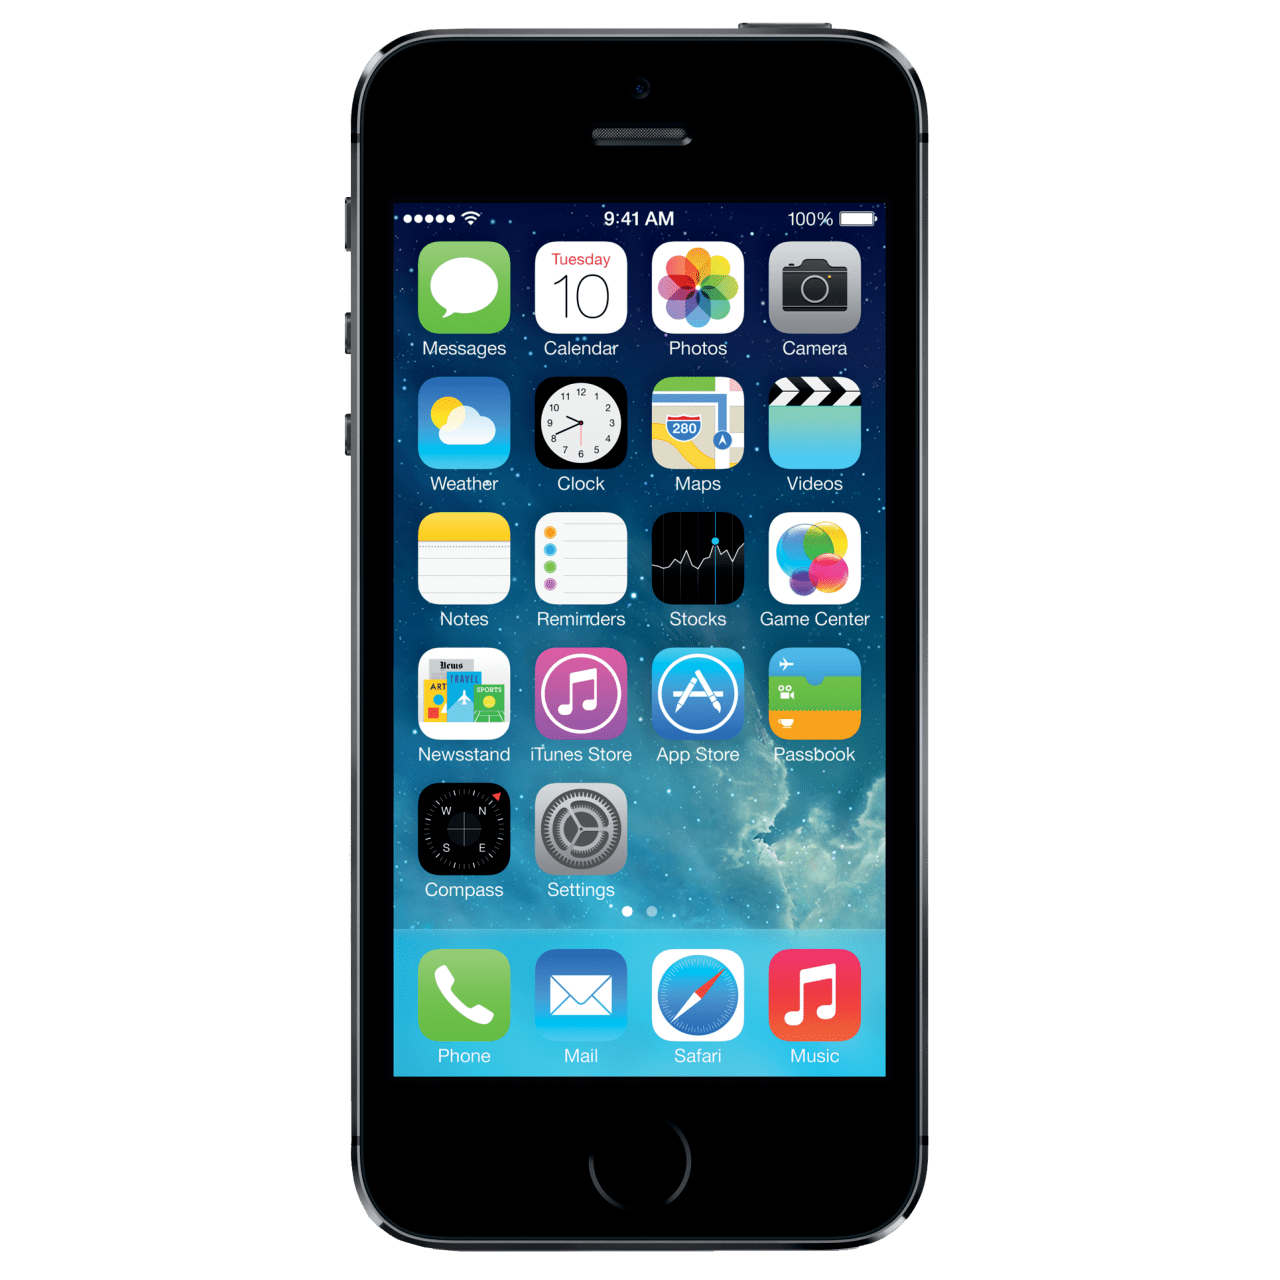 apple store iphone screen repair